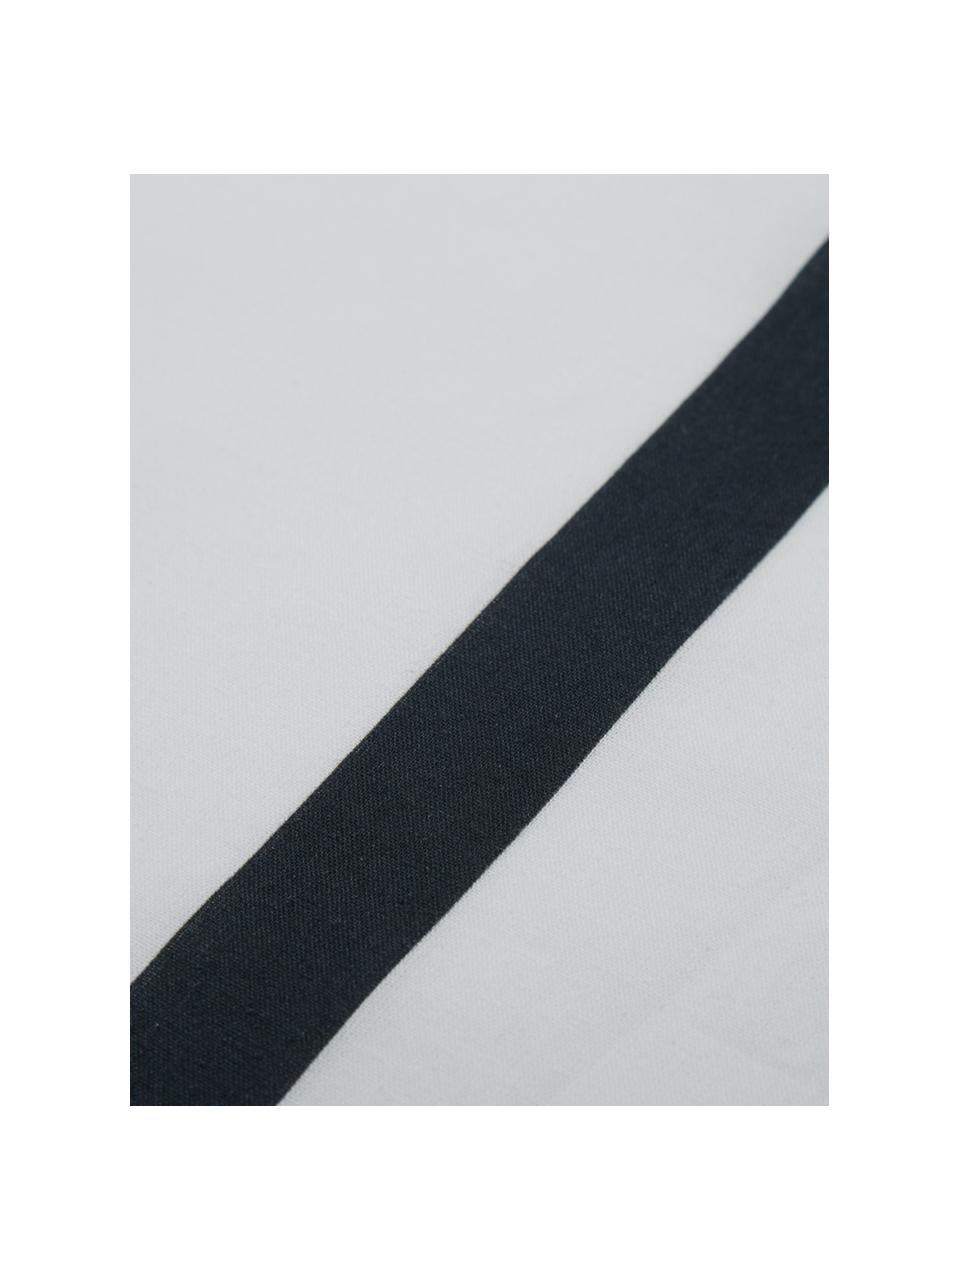 Drap plat en coton Blush, Blanc, rose vif, noir, 240 x 270 cm